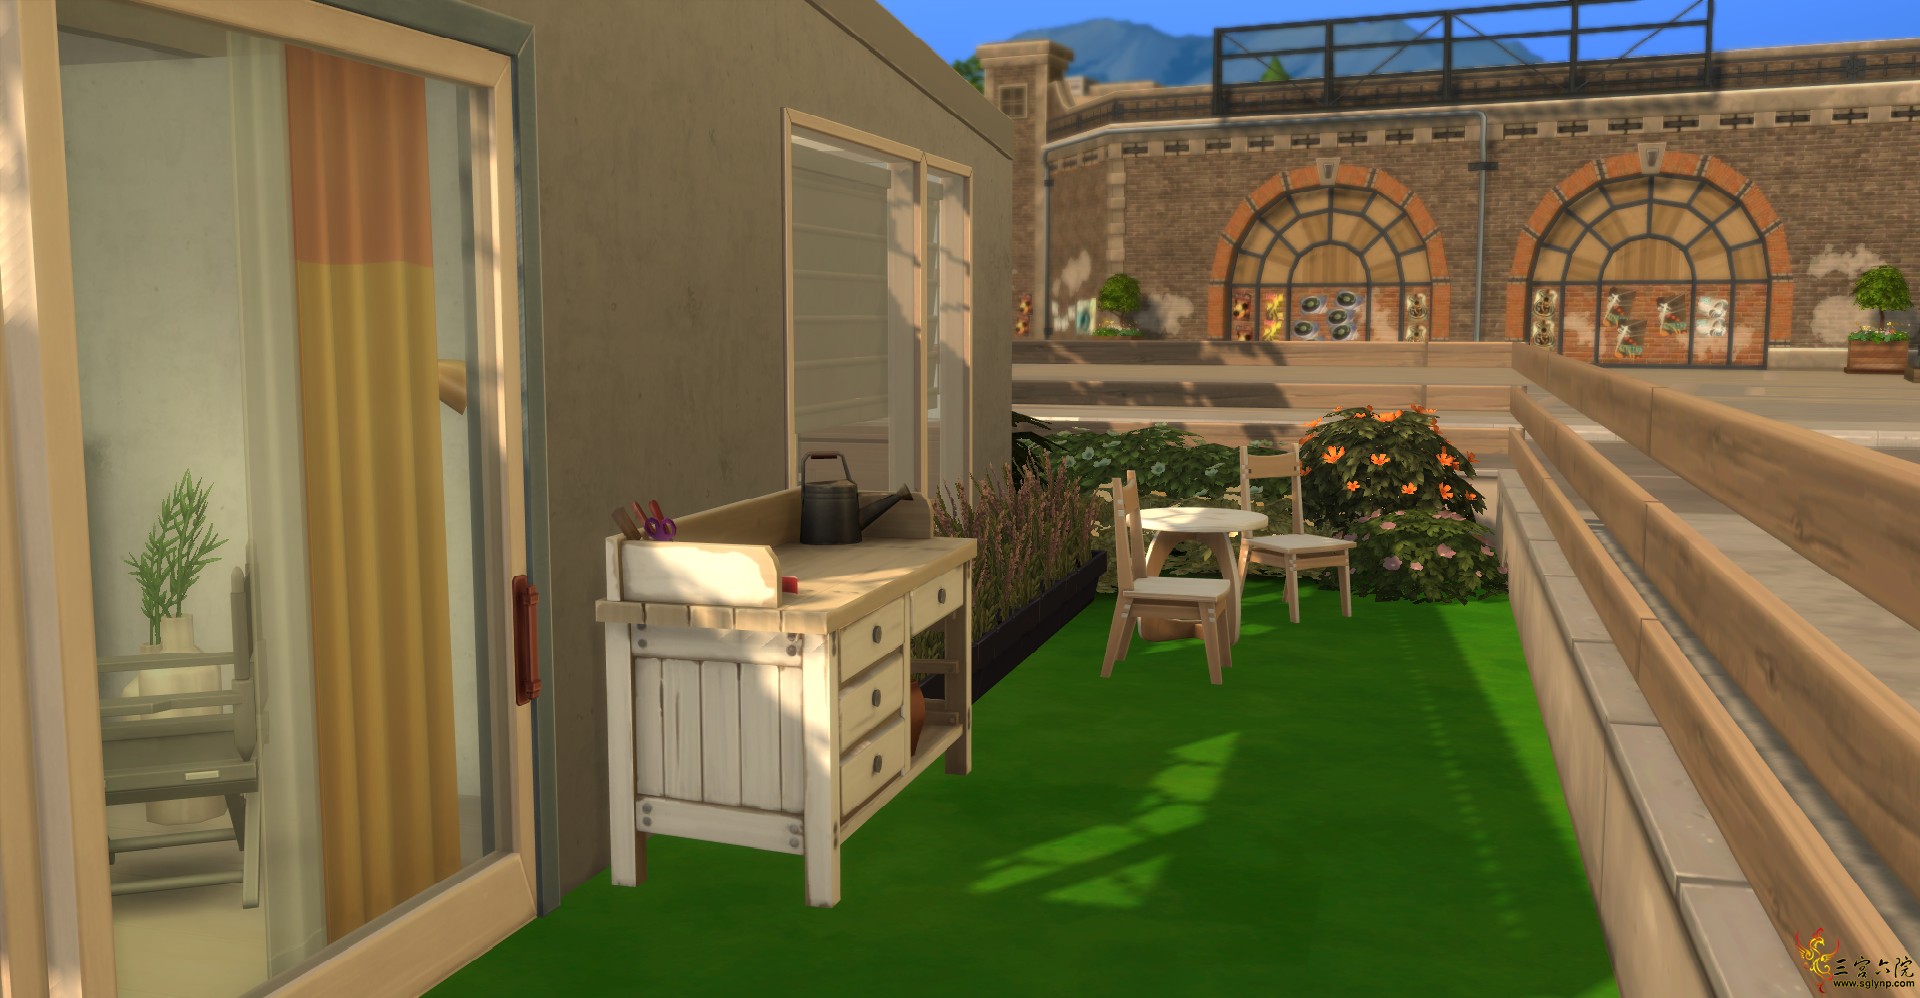 Sims 4 Screenshot 2021.05.10 - 19.08.58.63.png